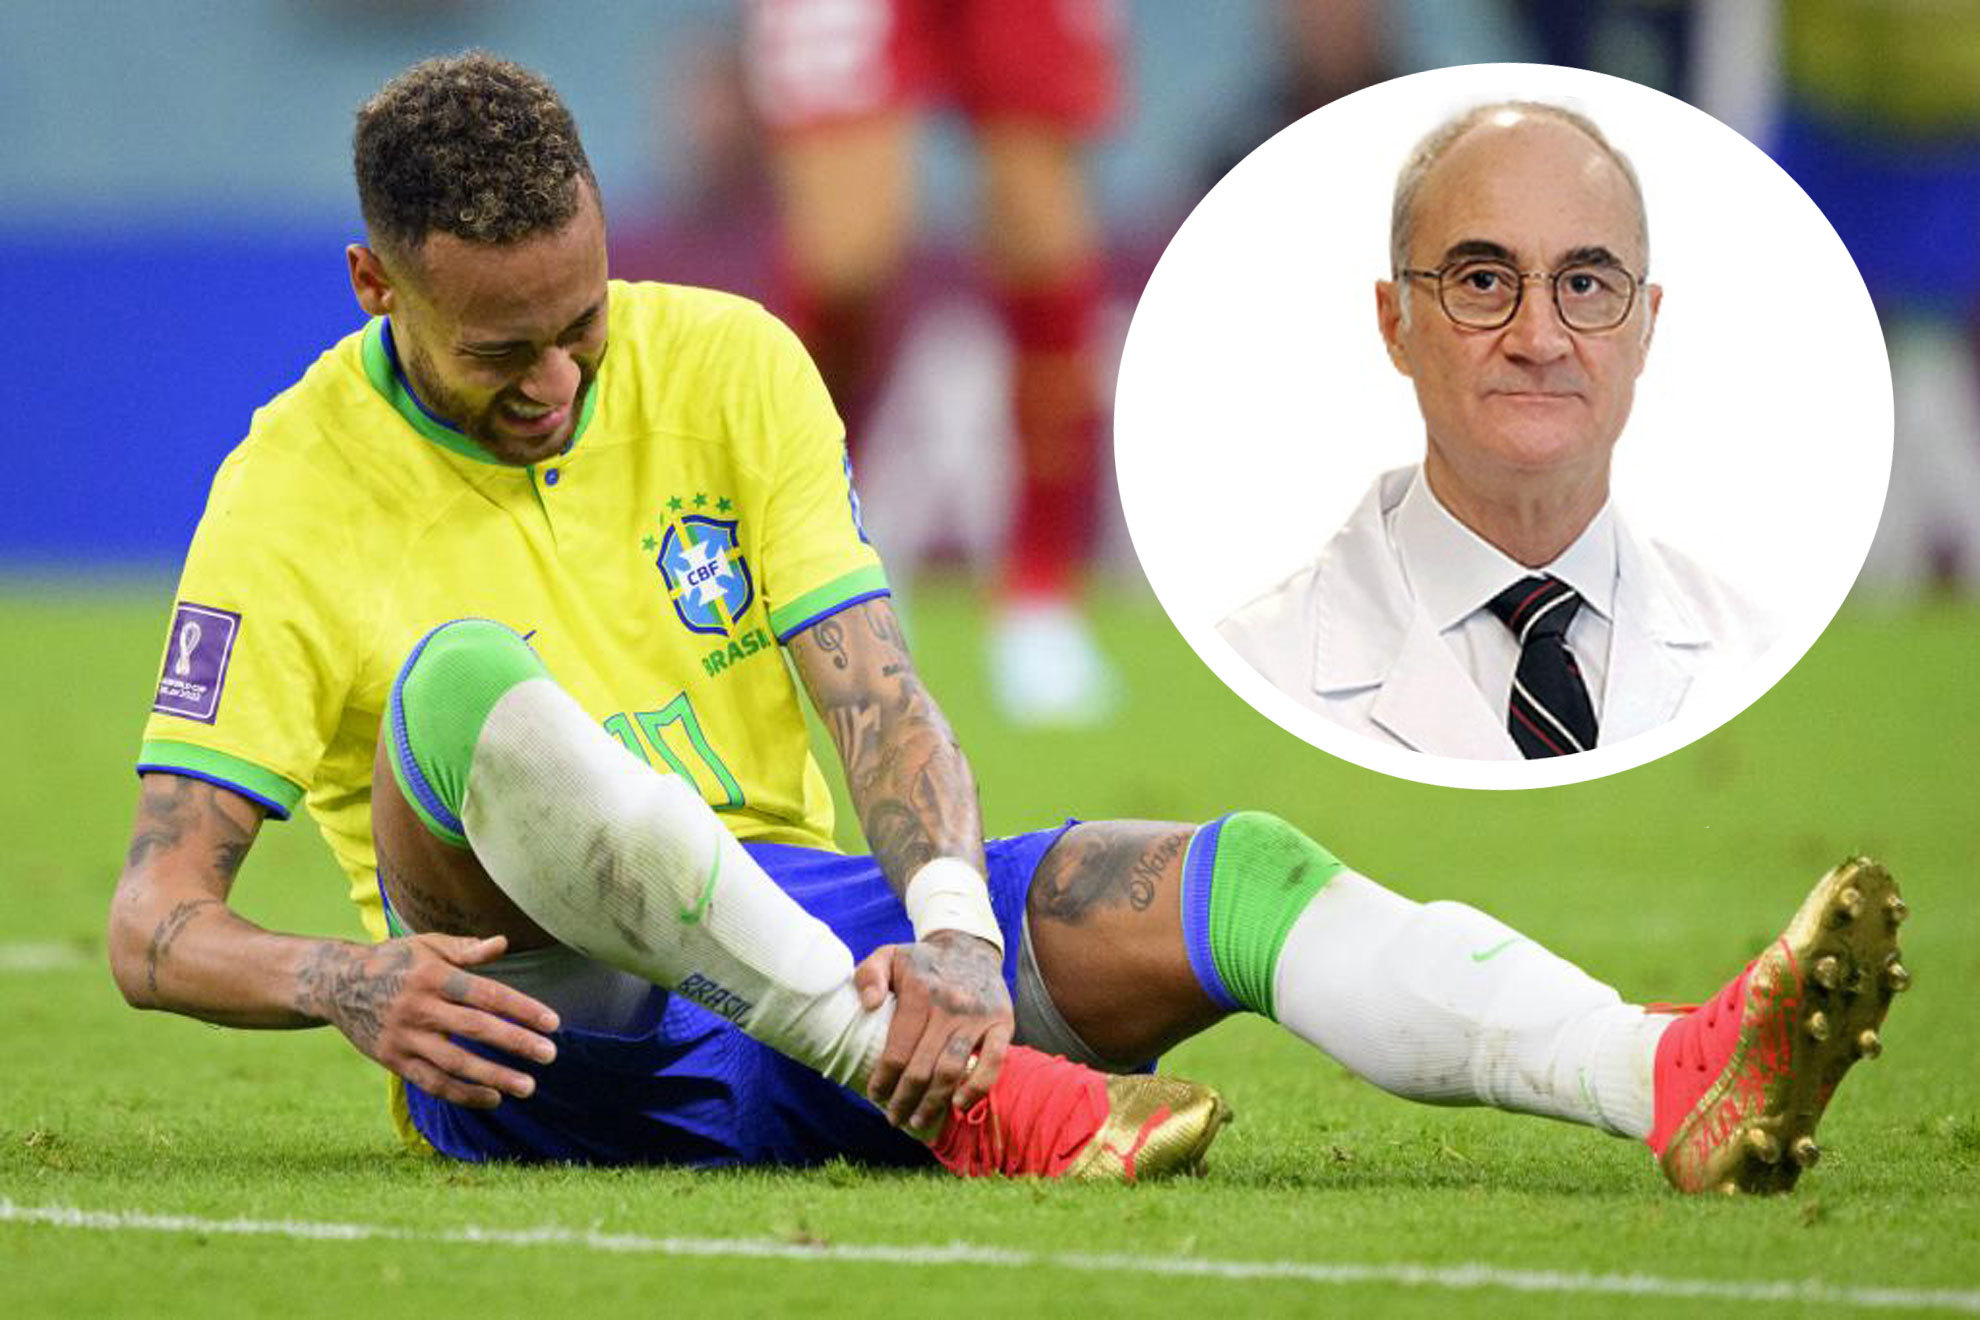 El Dr. Ripoll analiza la lesión de tobillo de Neymar: "Podrá jugar... ¿pero será él mismo?"